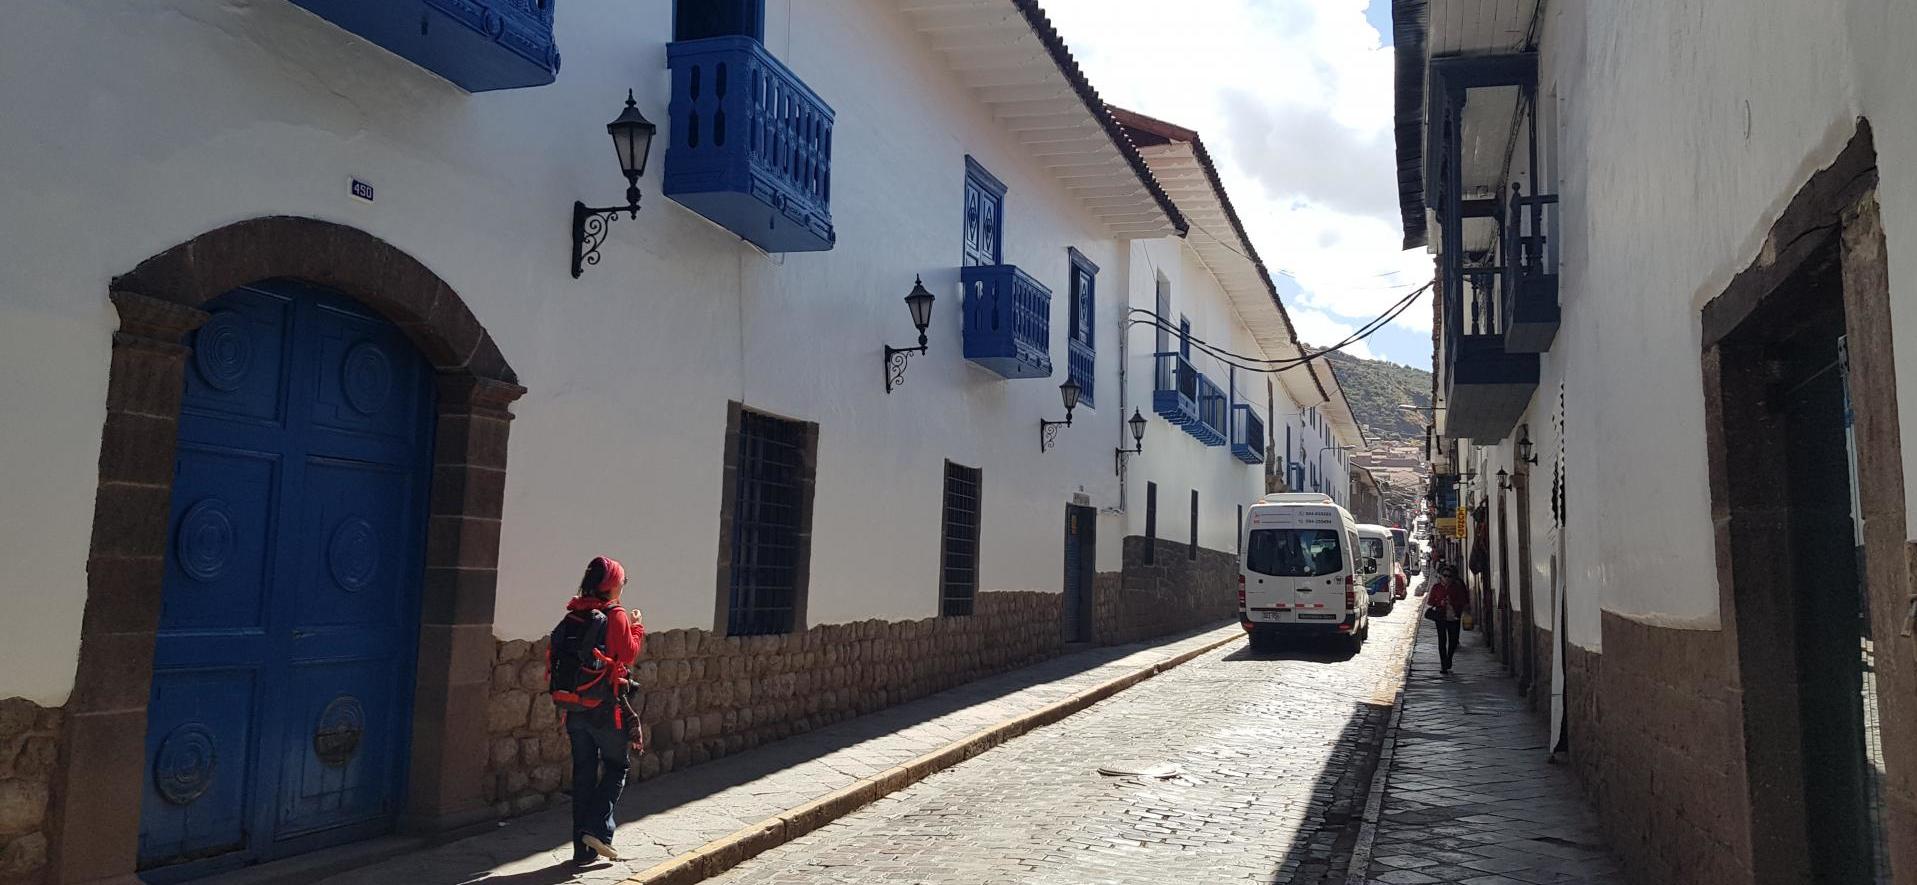 Ruelle de Cuzco